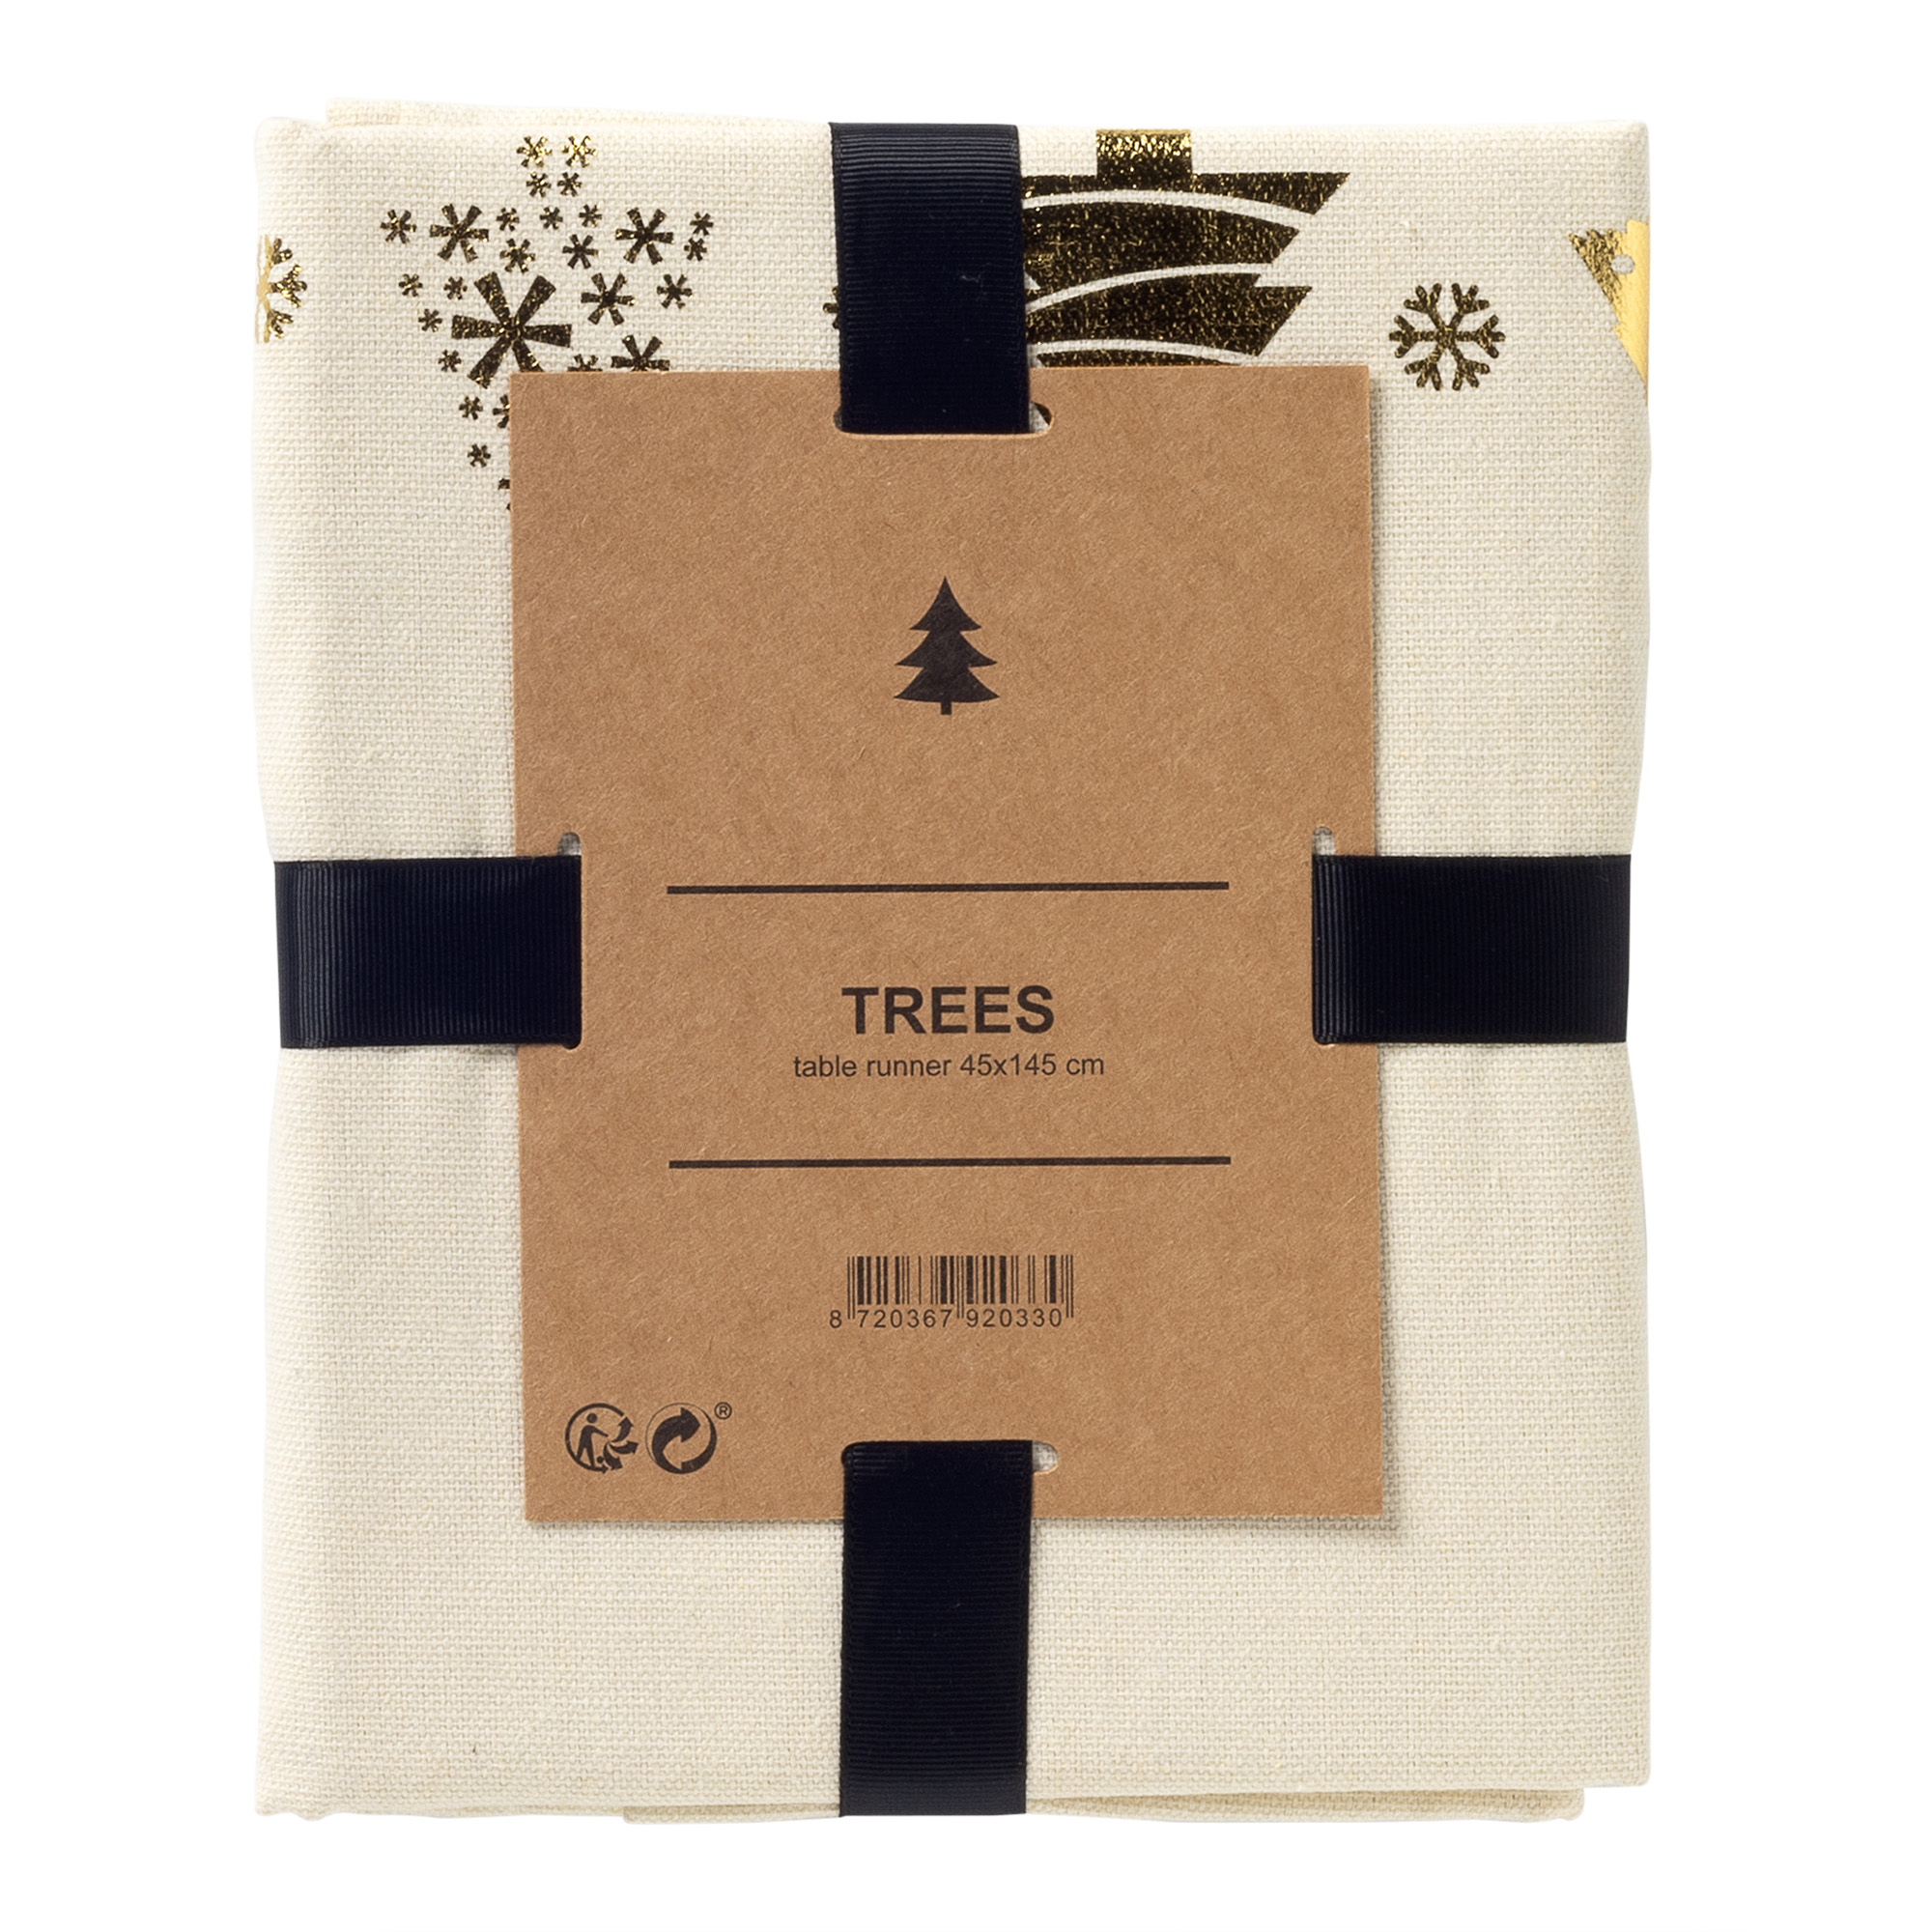 TREES – tafelloper 45x145 cm  - met kerstbomen - Whisper White - wit